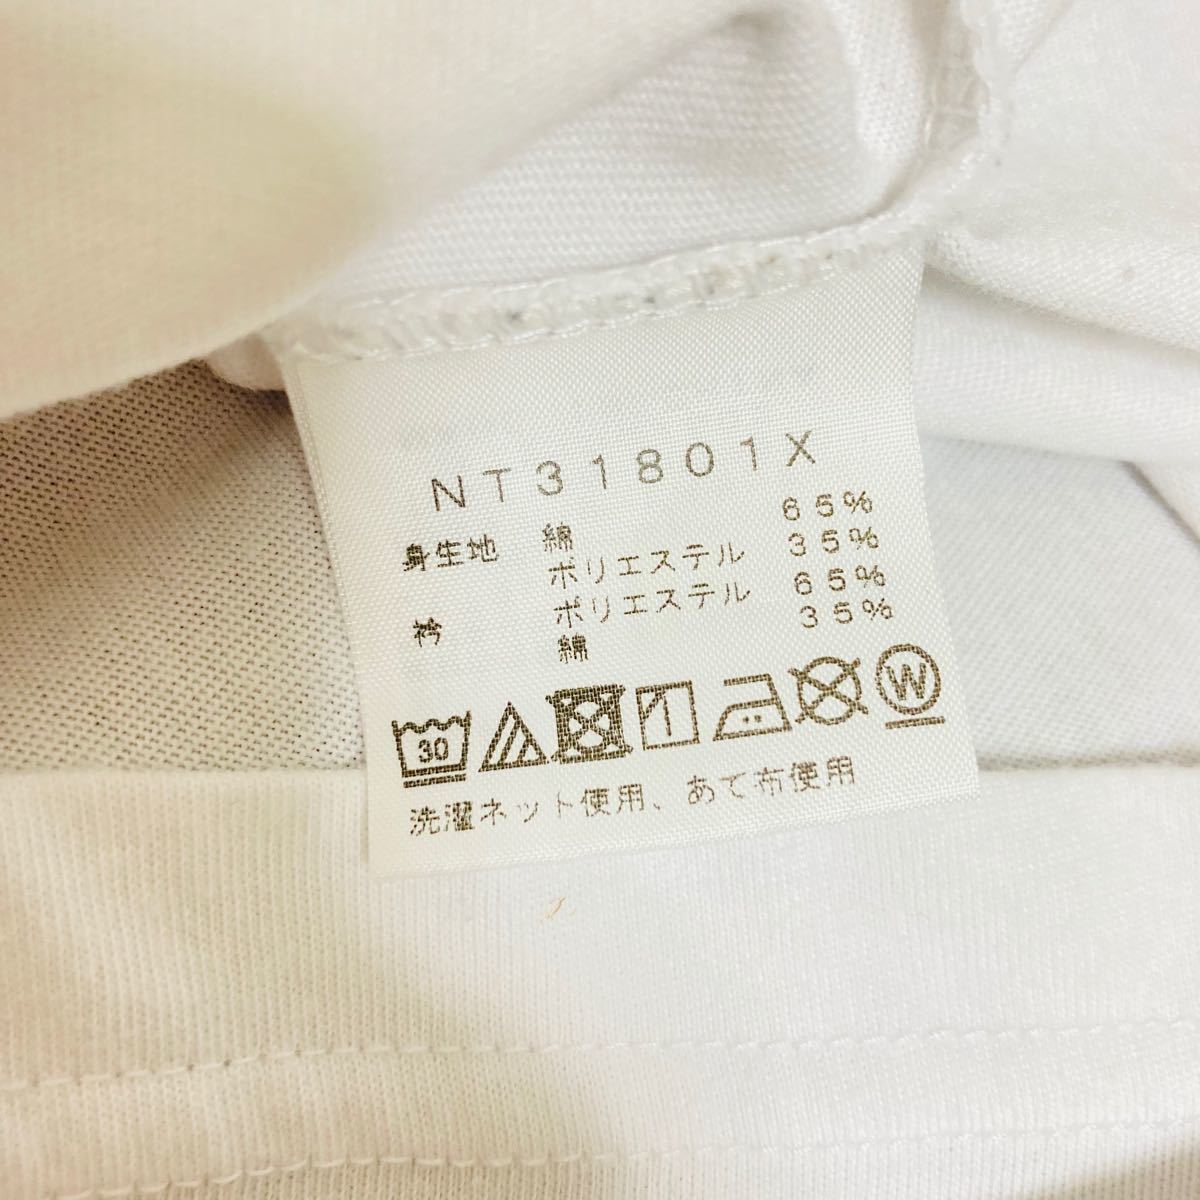 【大人気】THE NORTH FACE ザノースフェイス Tシャツ 半袖 ビッグロゴ★Mサイズ メンズ NT31801X